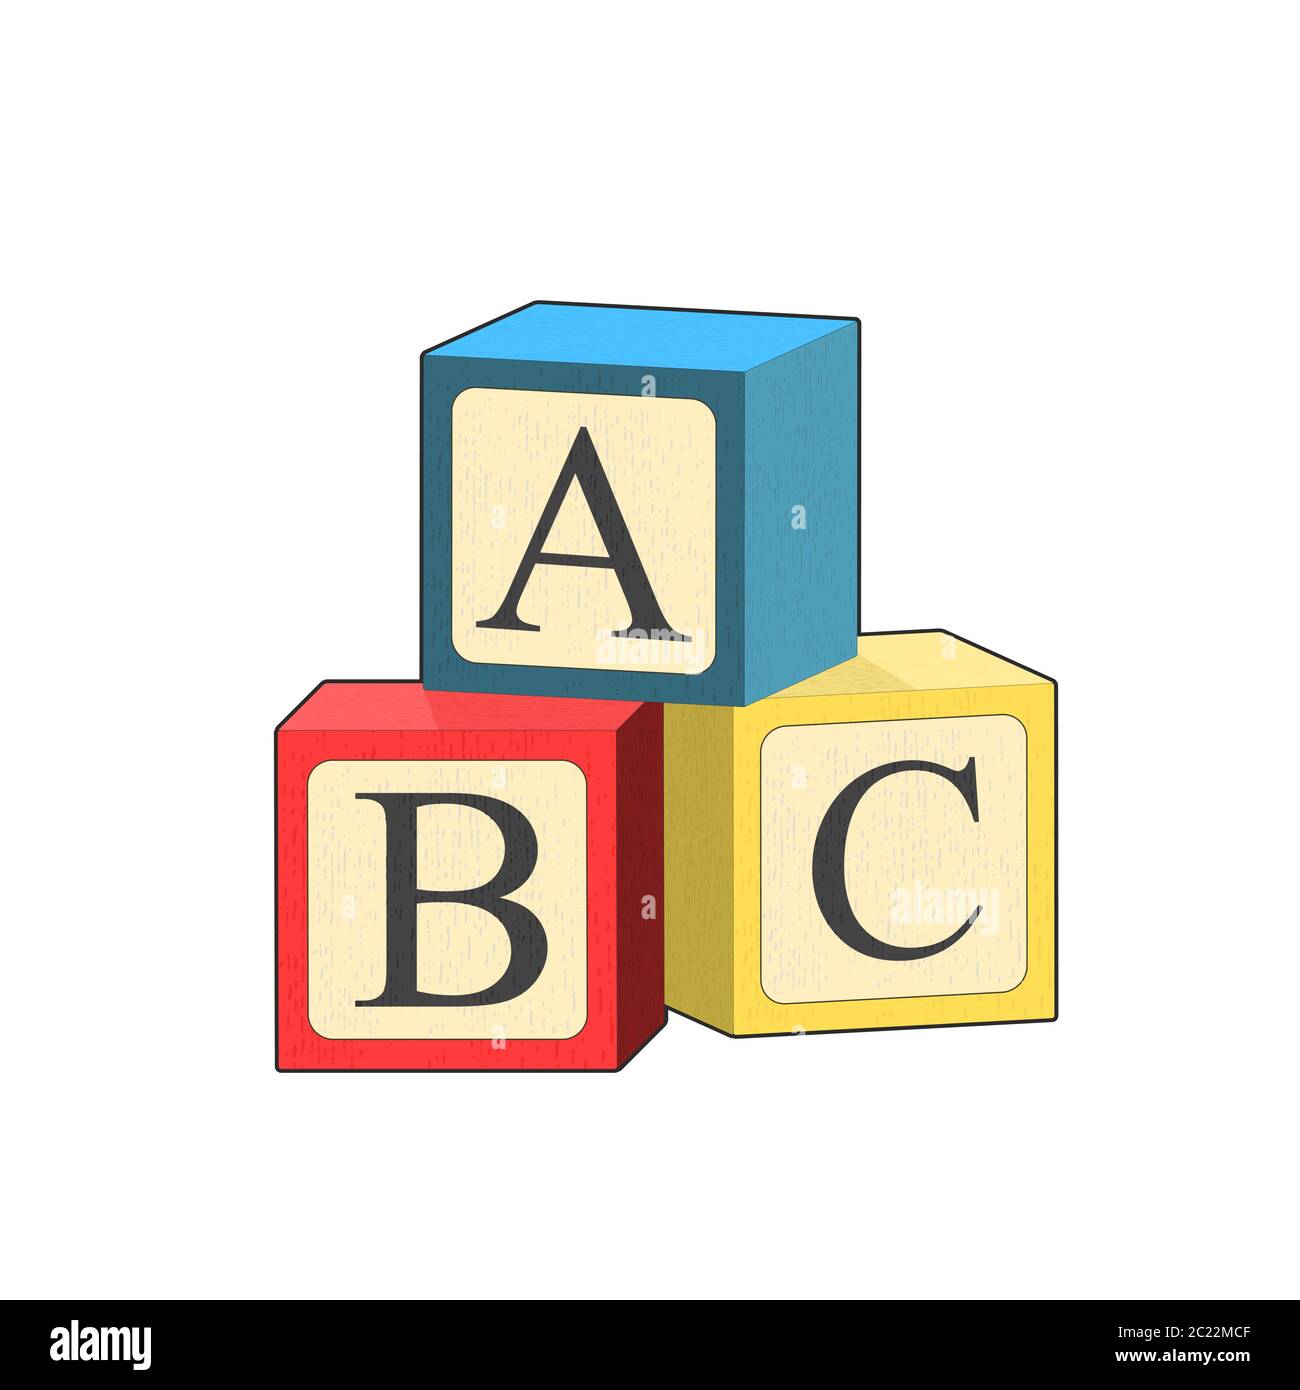 https://c8.alamy.com/compfr/2c22mcf/batiment-bloc-abc-illustration-vectorielle-de-dessin-anime-bebe-jouet-pyramide-jouer-en-bois-alphabet-cube-jeu-logique-jeu-enfant-developpement-jeu-de-piles-2c22mcf.jpg